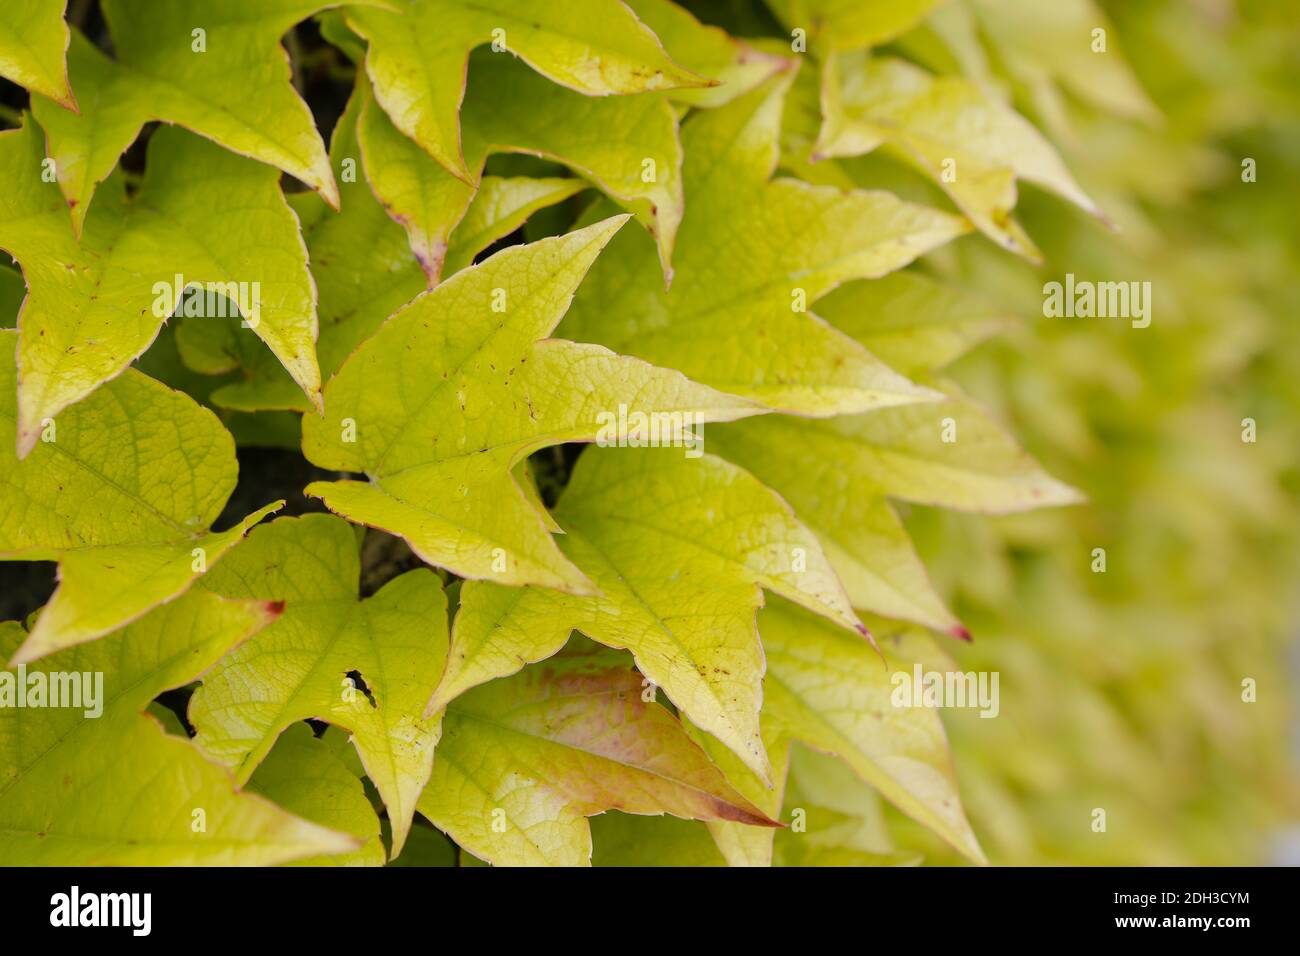 Vino salvaje, Parthenocissus tricuspidata Foto de stock